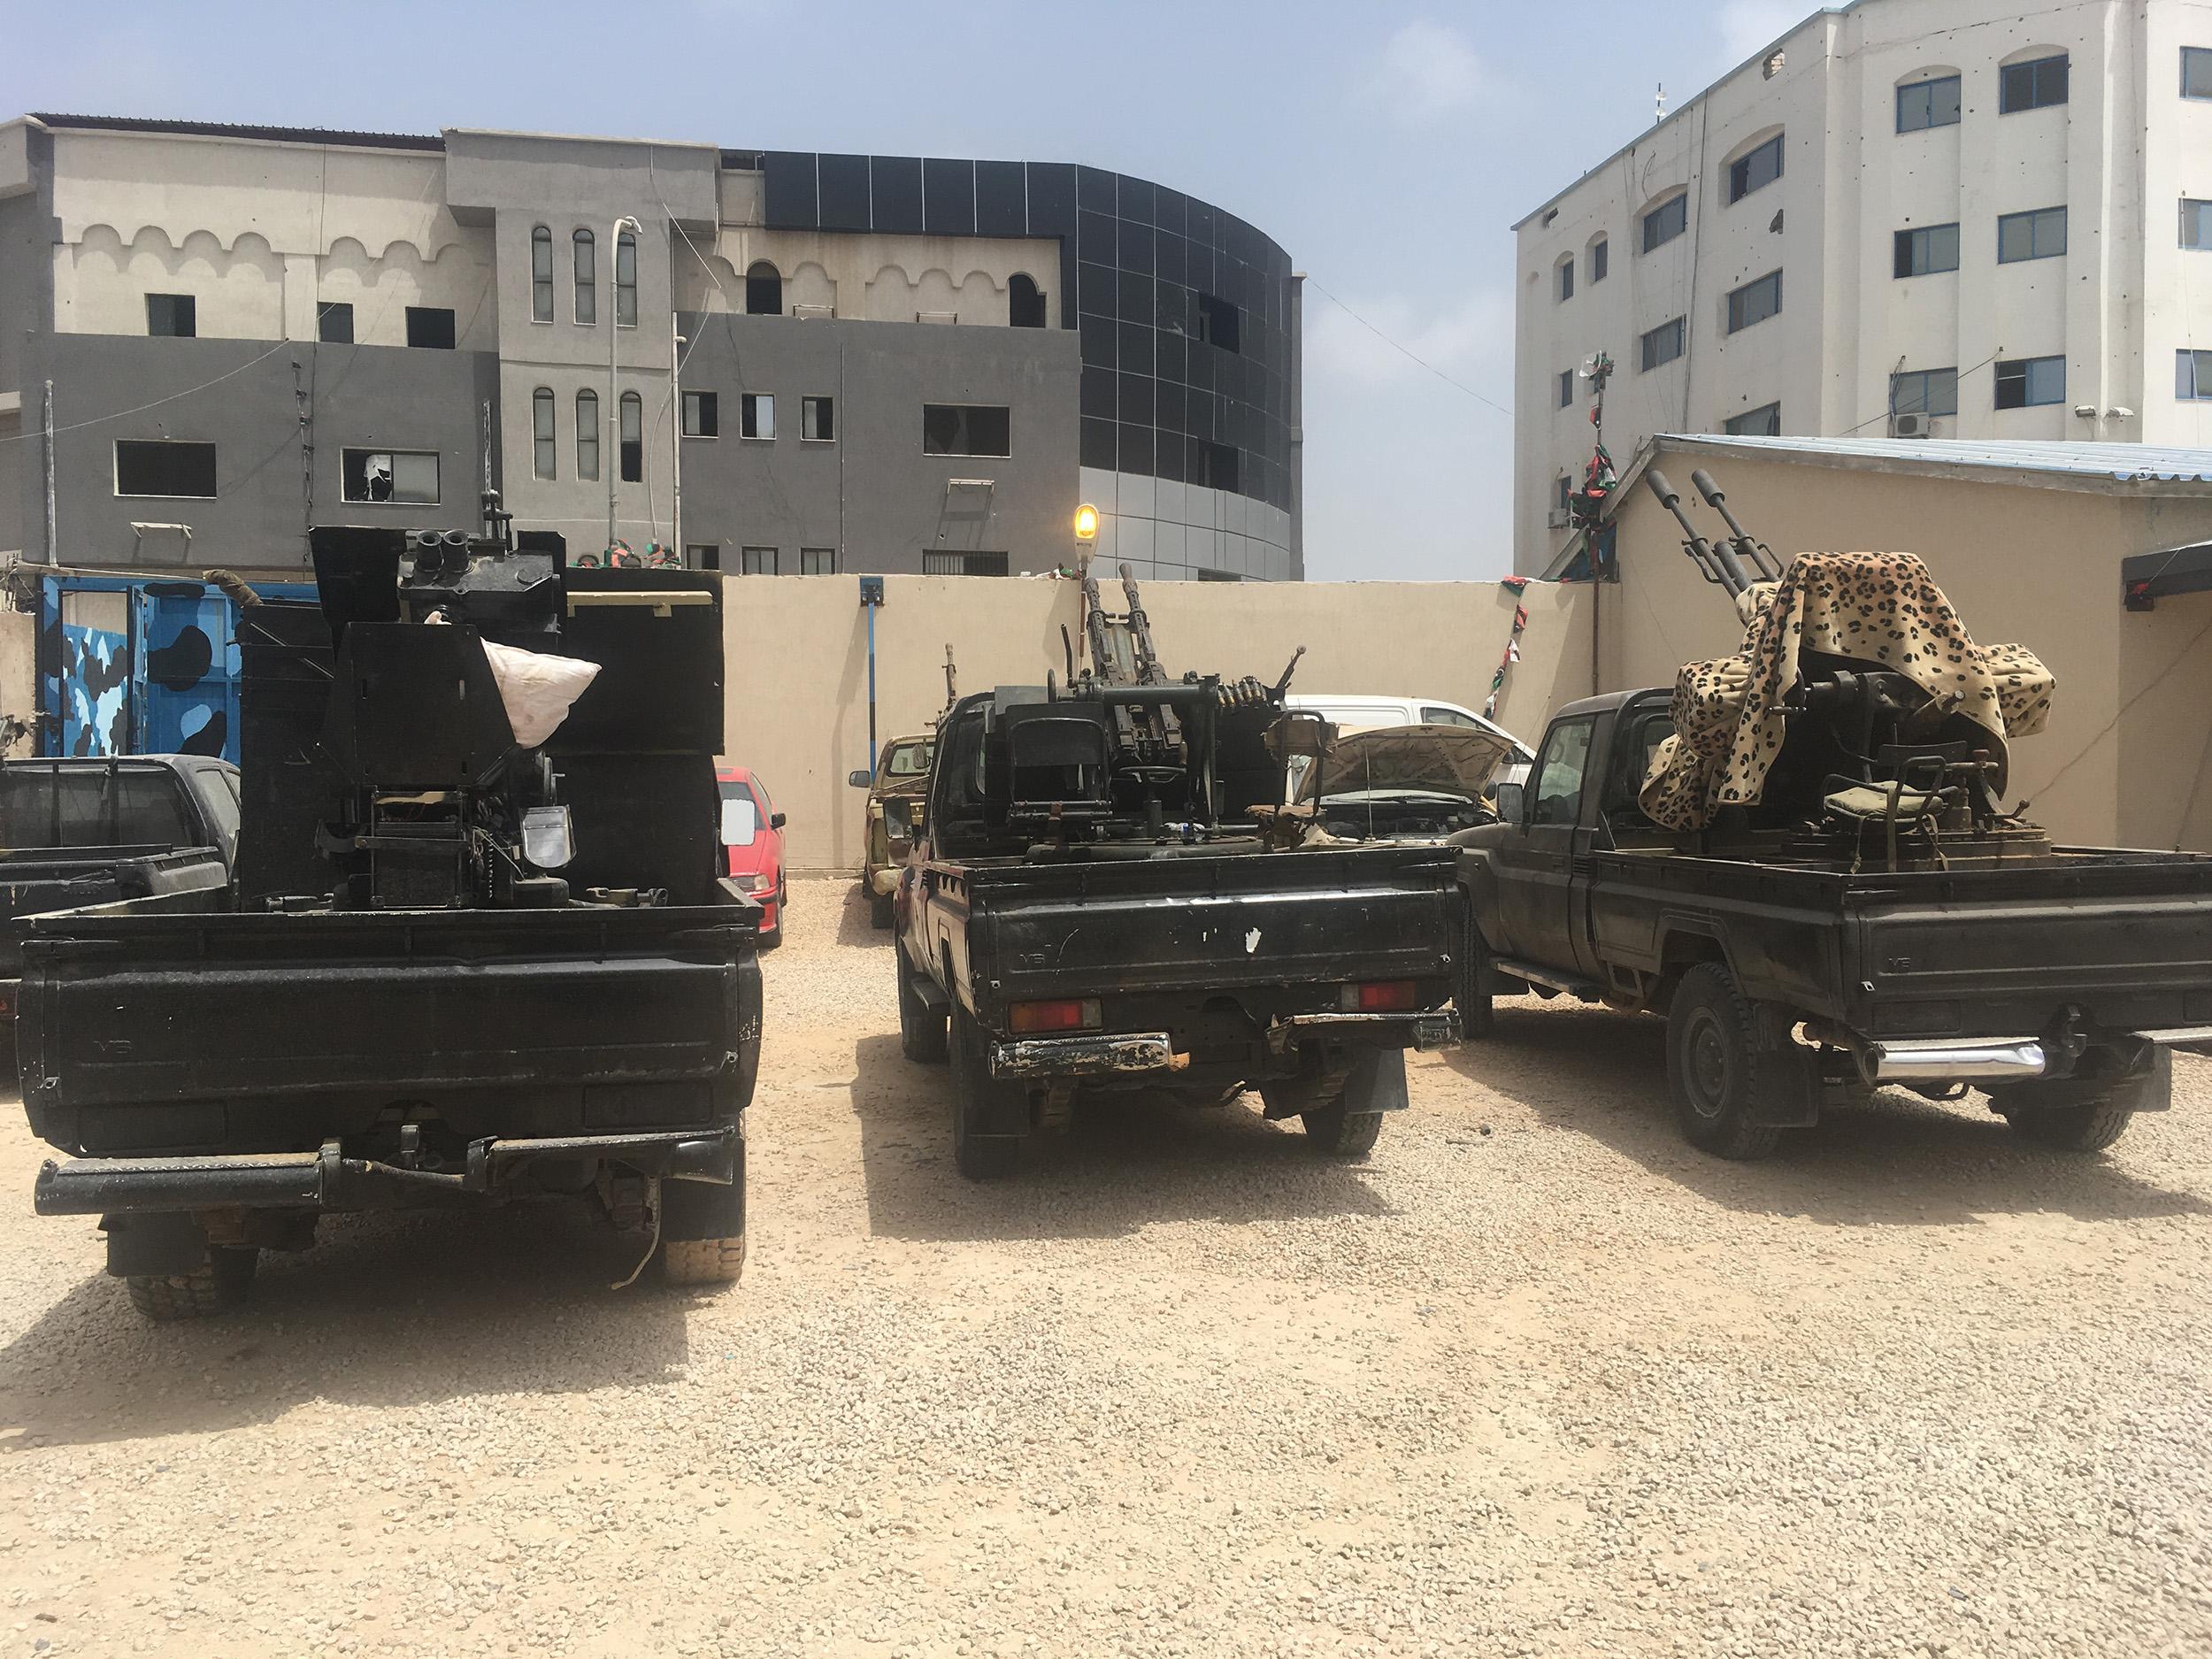 Des pick-up avec des lance-roquettes et des canons anti-aérien sur la plateforme arrière dans la ville libyenne de Zaouia. [RTS - Maurine Mercier]